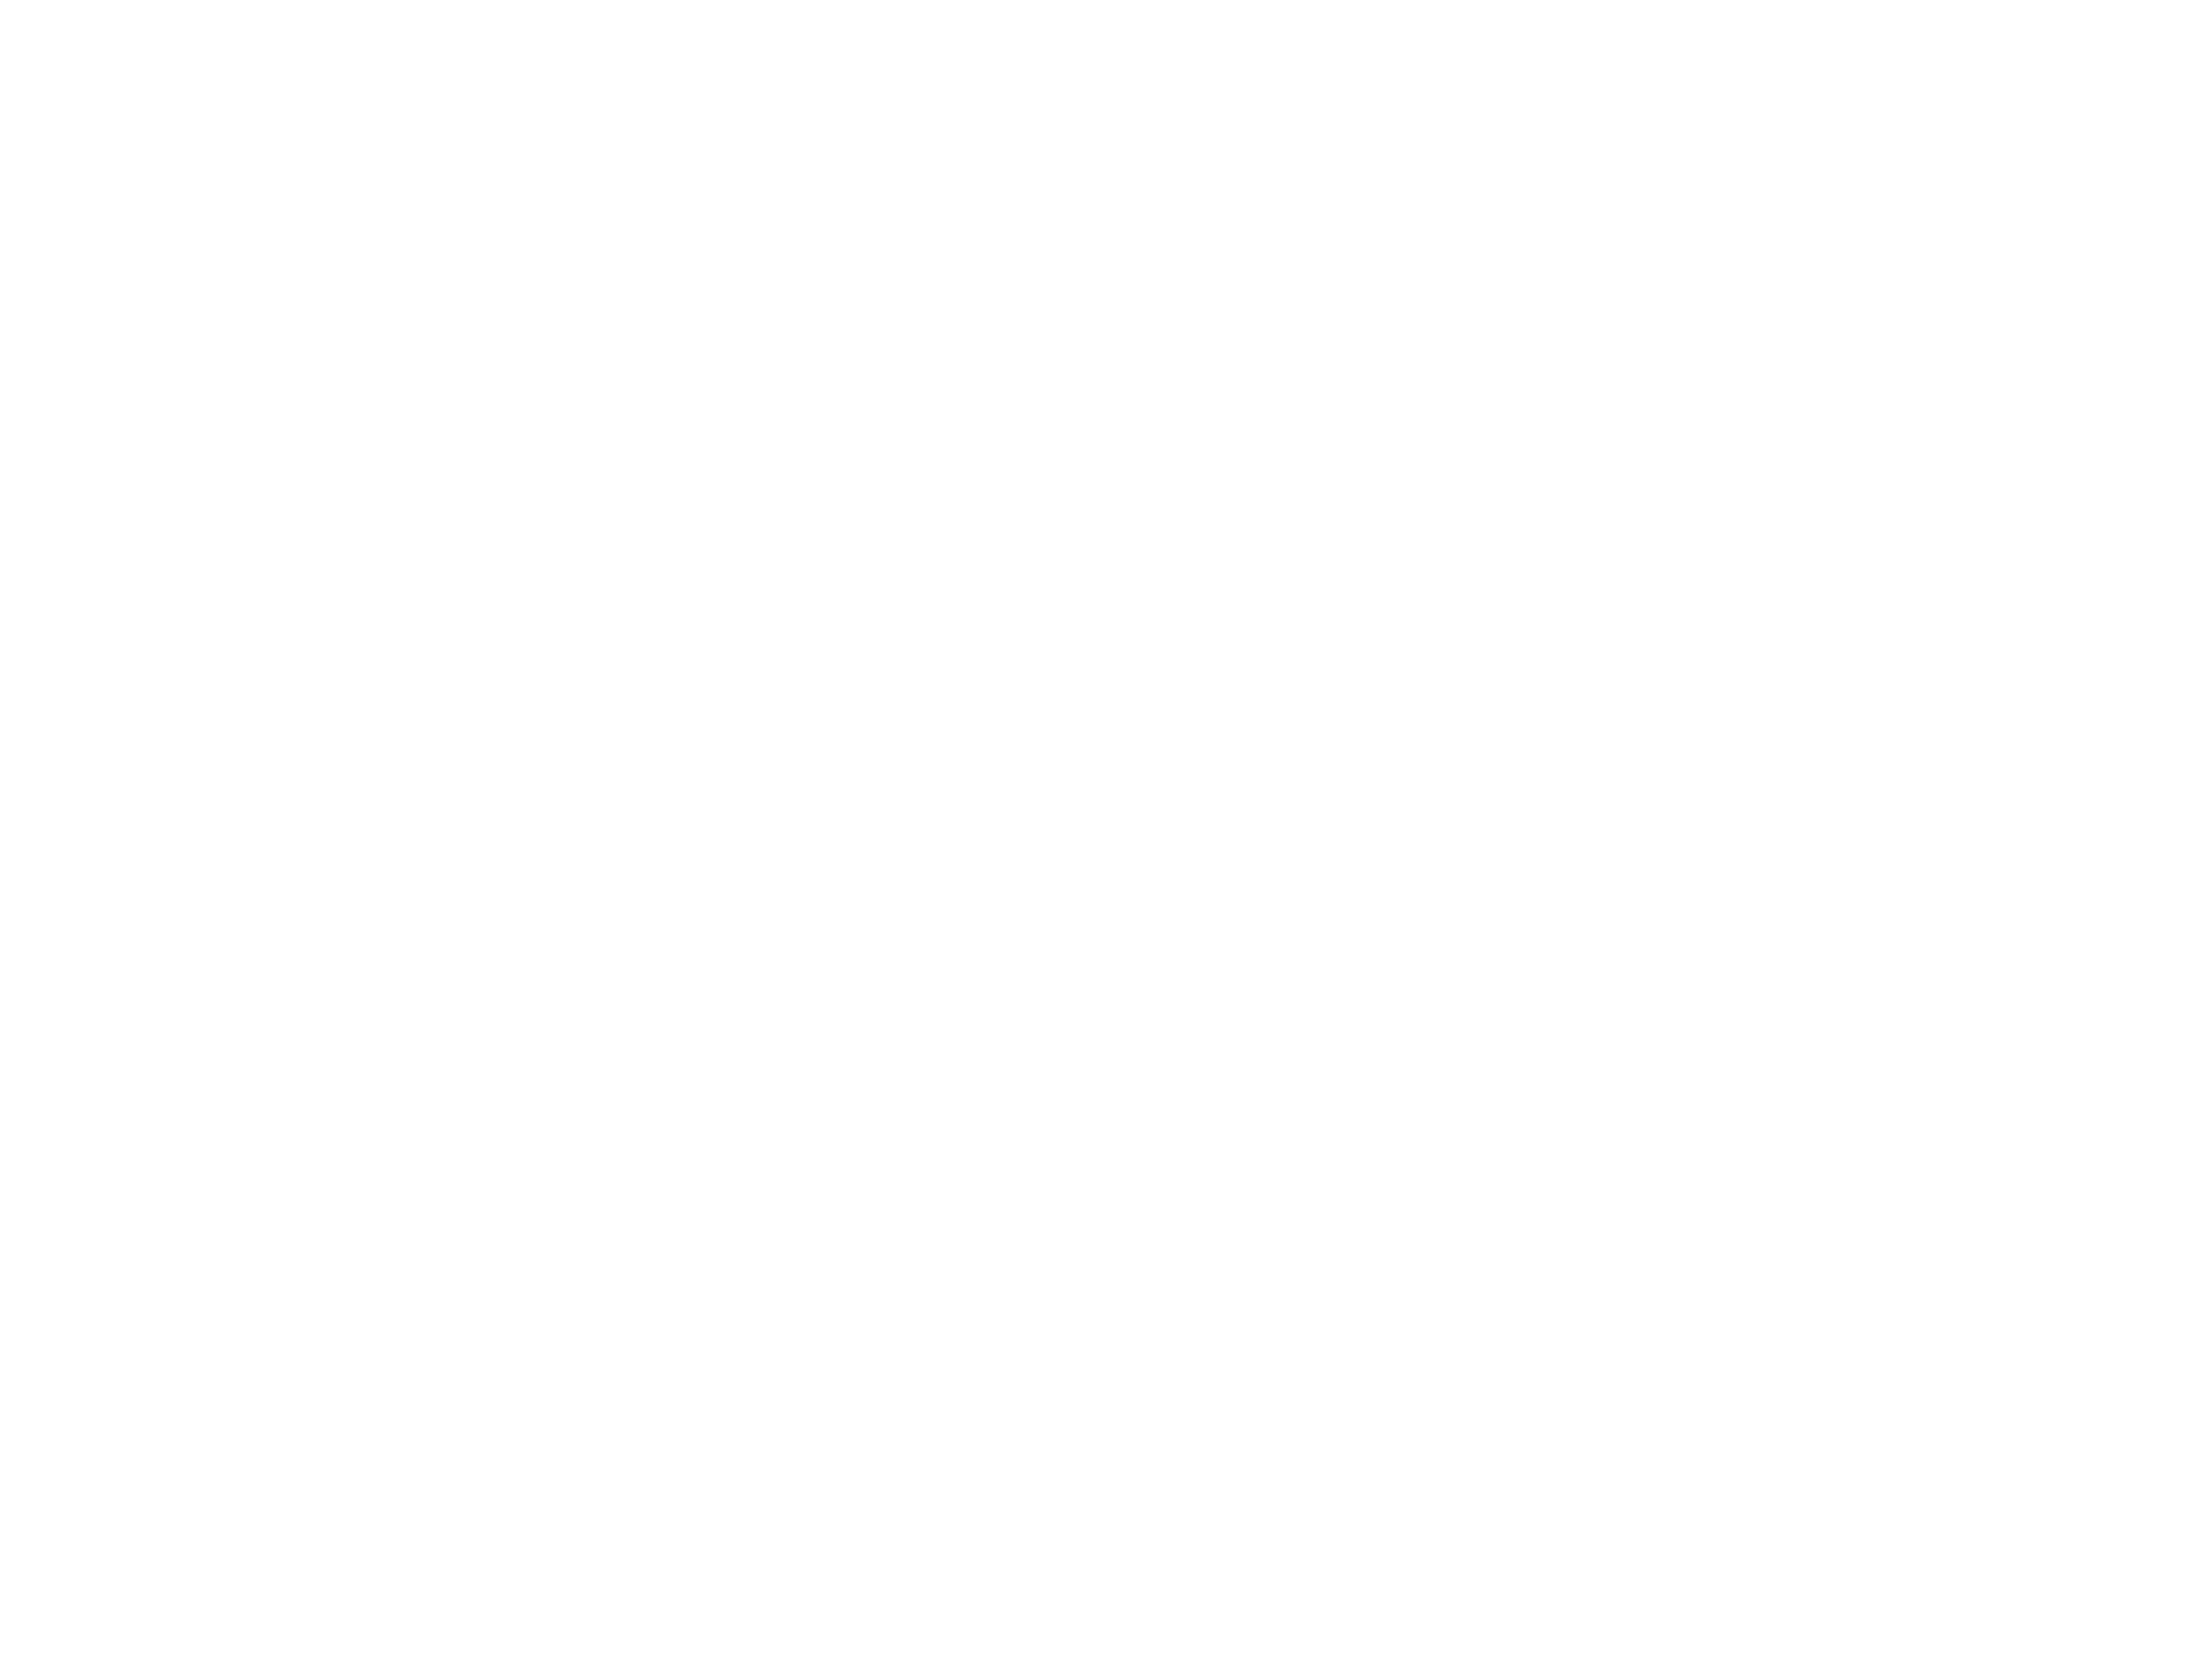 Golden Lion Development